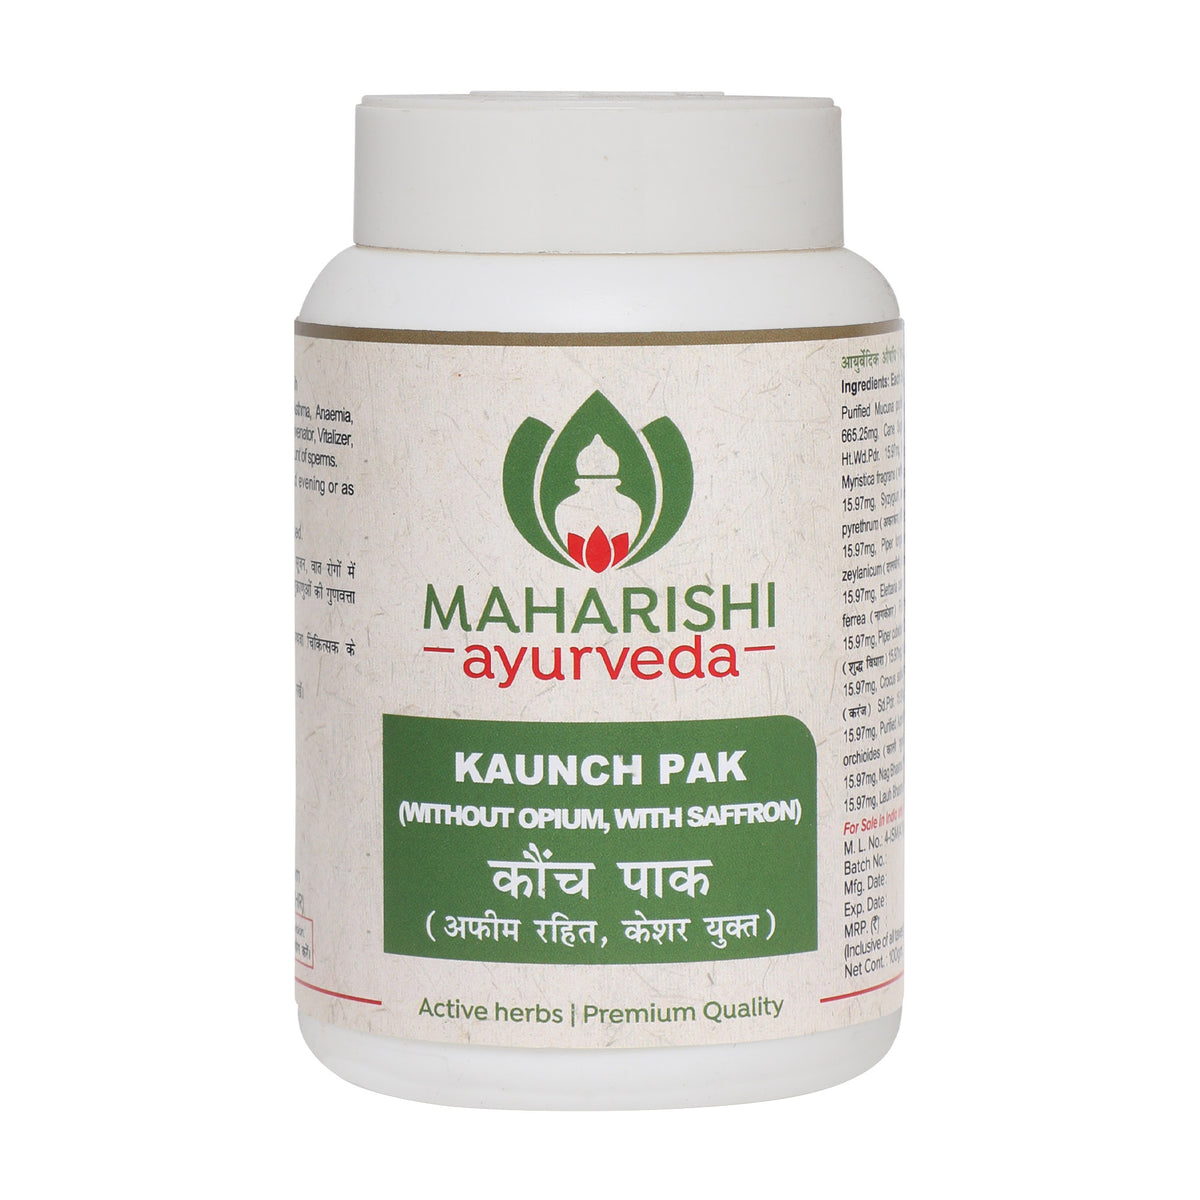 Kaunch Pak by Maharishi Ayurveda